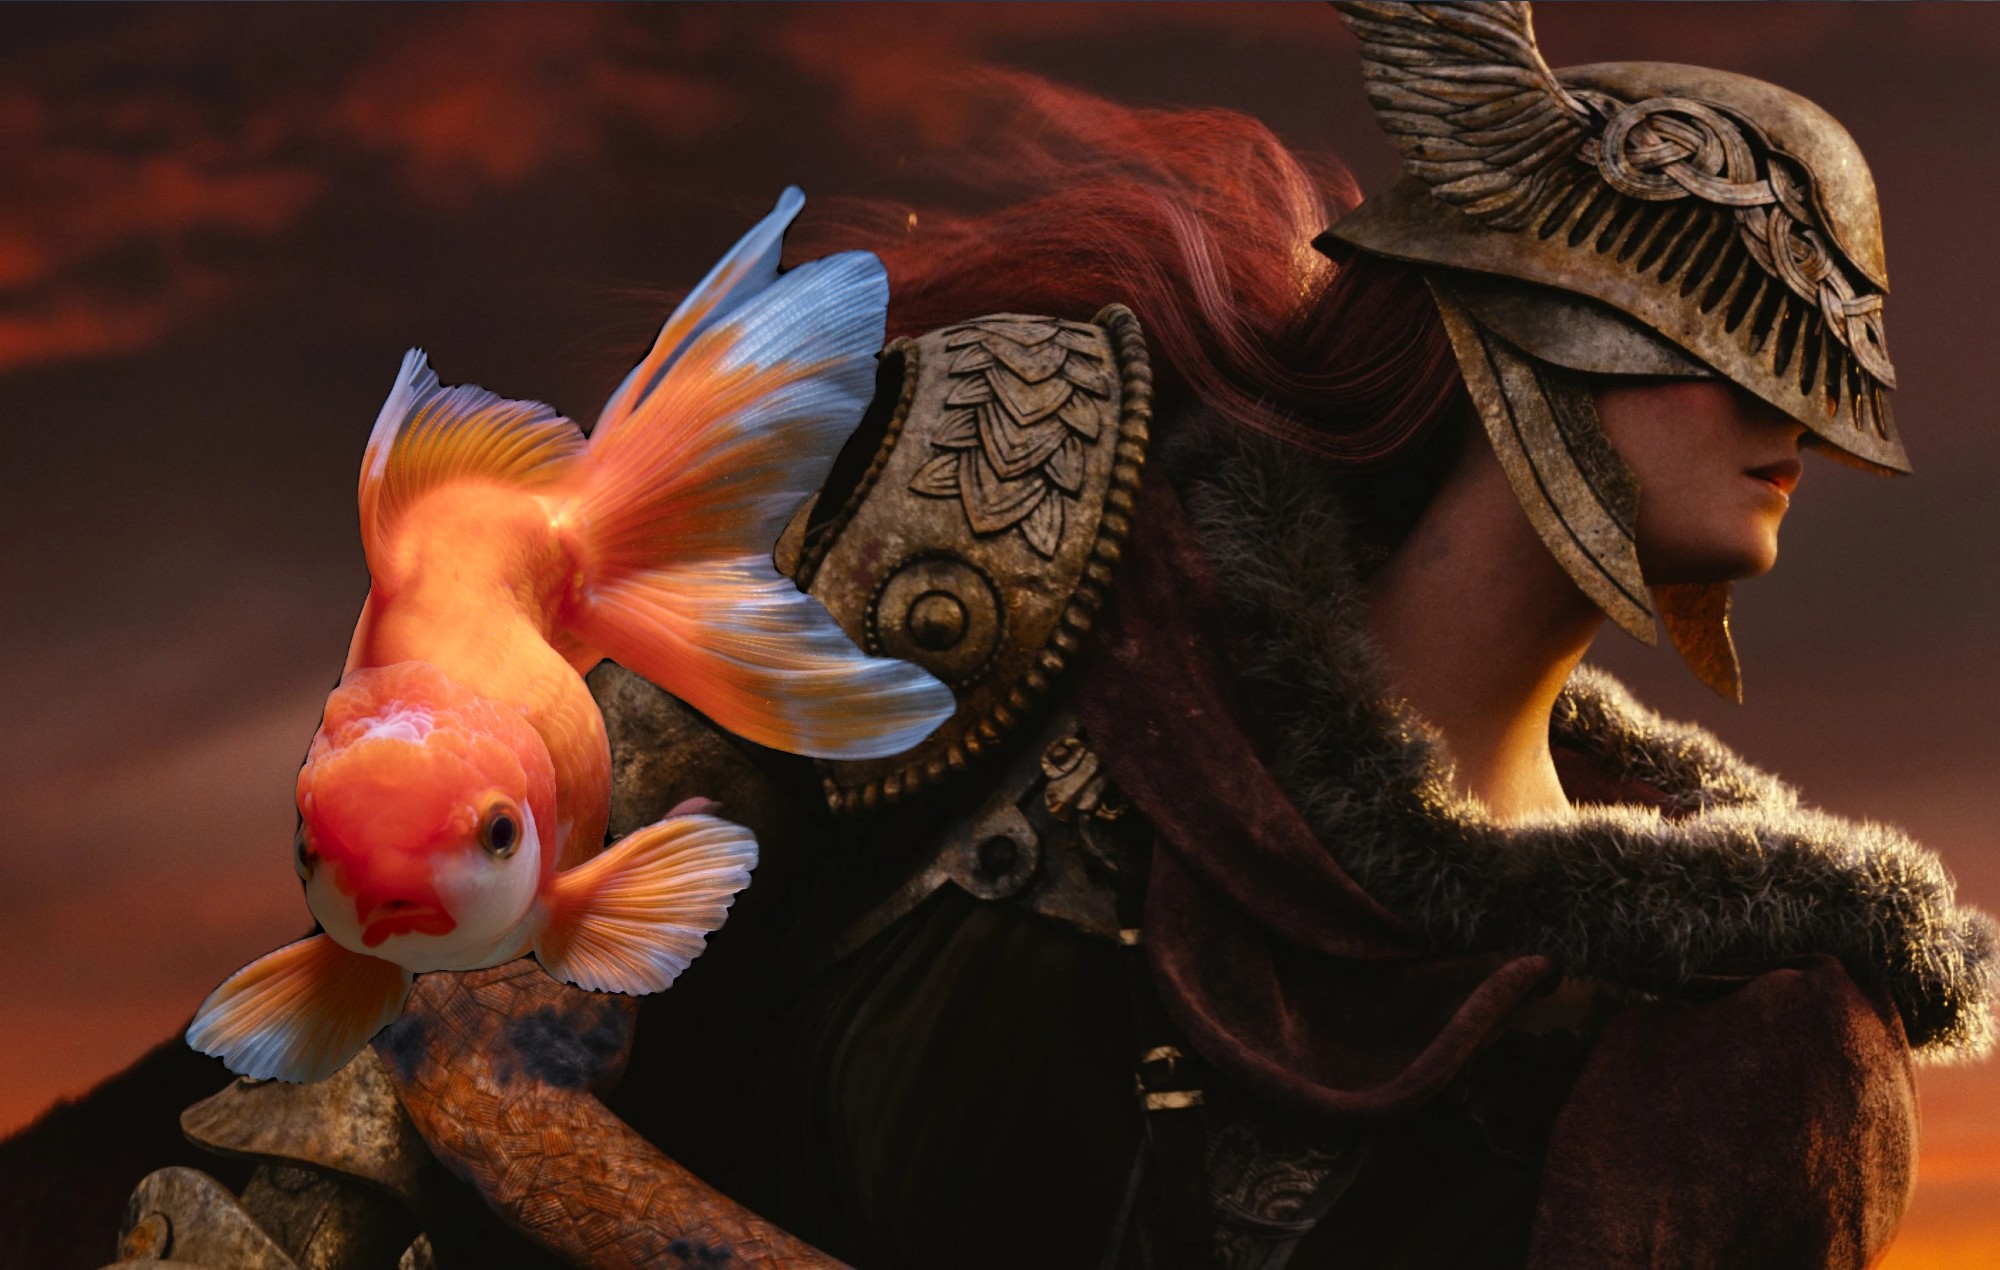 Guarda un pesce rosso battere il boss più duro in "Elden Ring"